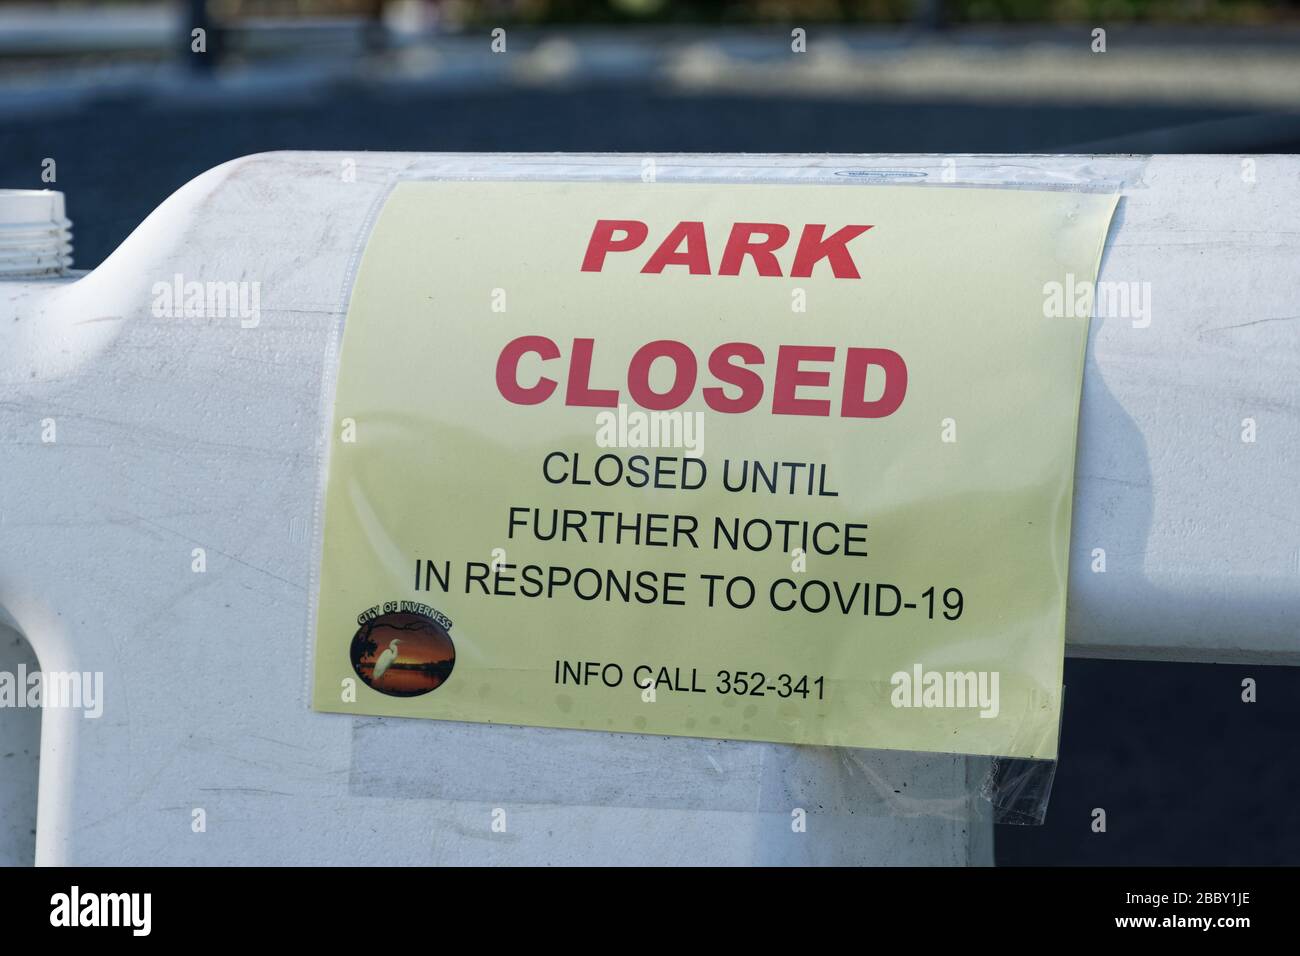 1ER AVRIL 2020, INVERNESS, FL : barricades avec panneaux indiquant « Park Closed » en raison de l'accès au bar COVID-19 aux parcs publics d'Inverness « jusqu'à nouvel ordre ». Banque D'Images